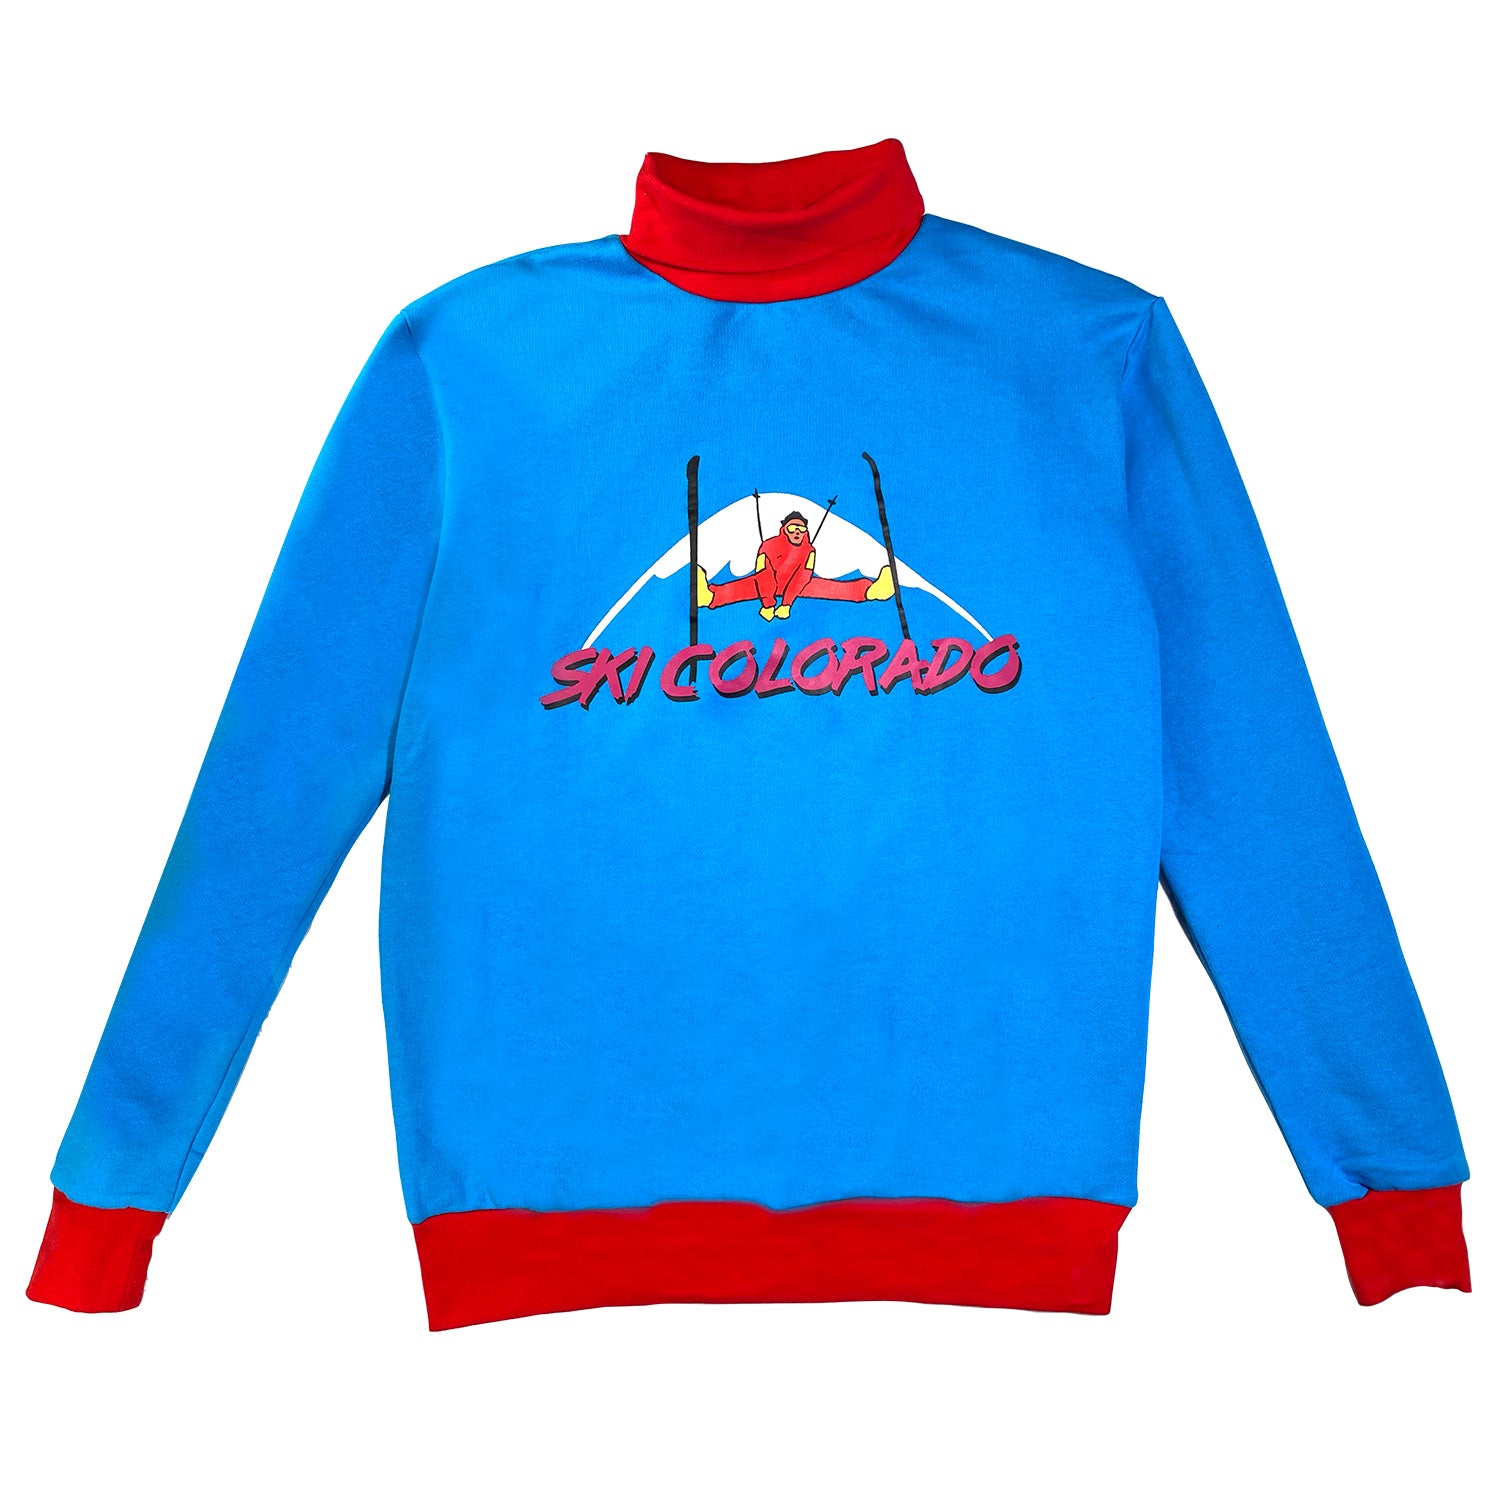 Ski Colorado - Vintage Retro Turtleneck Sweater